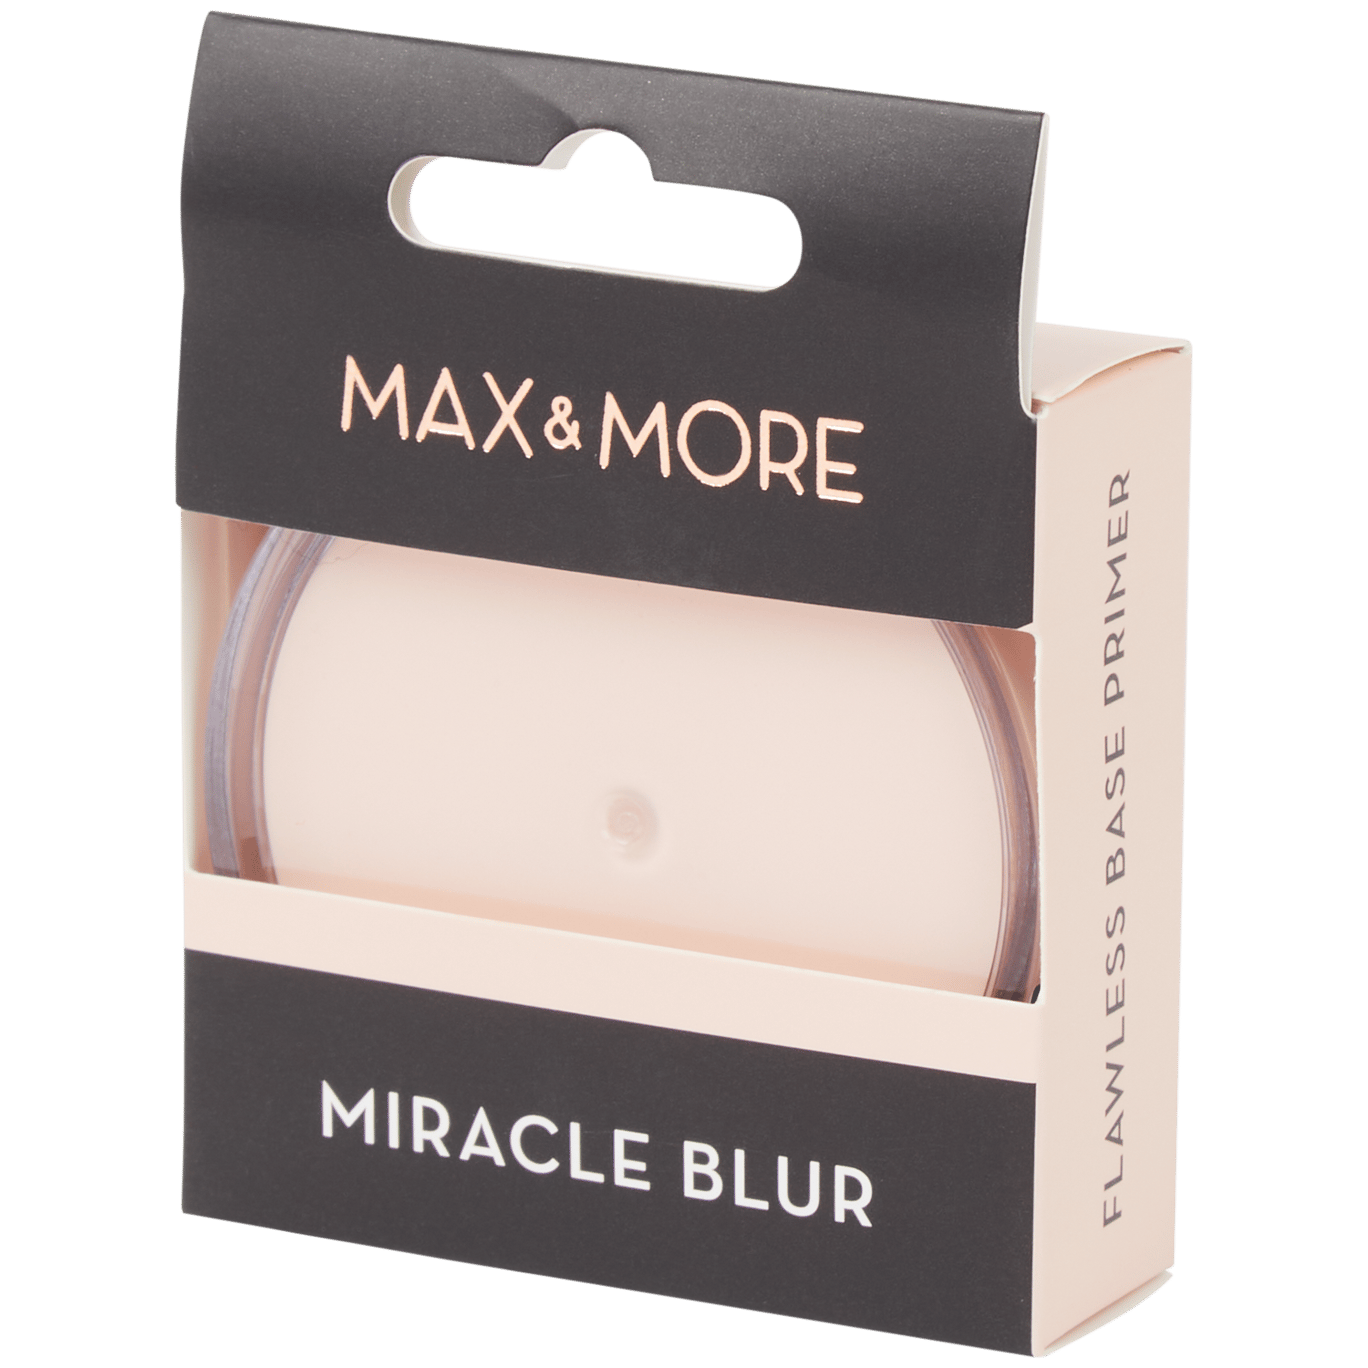 Max & More Primer Miracle Blur